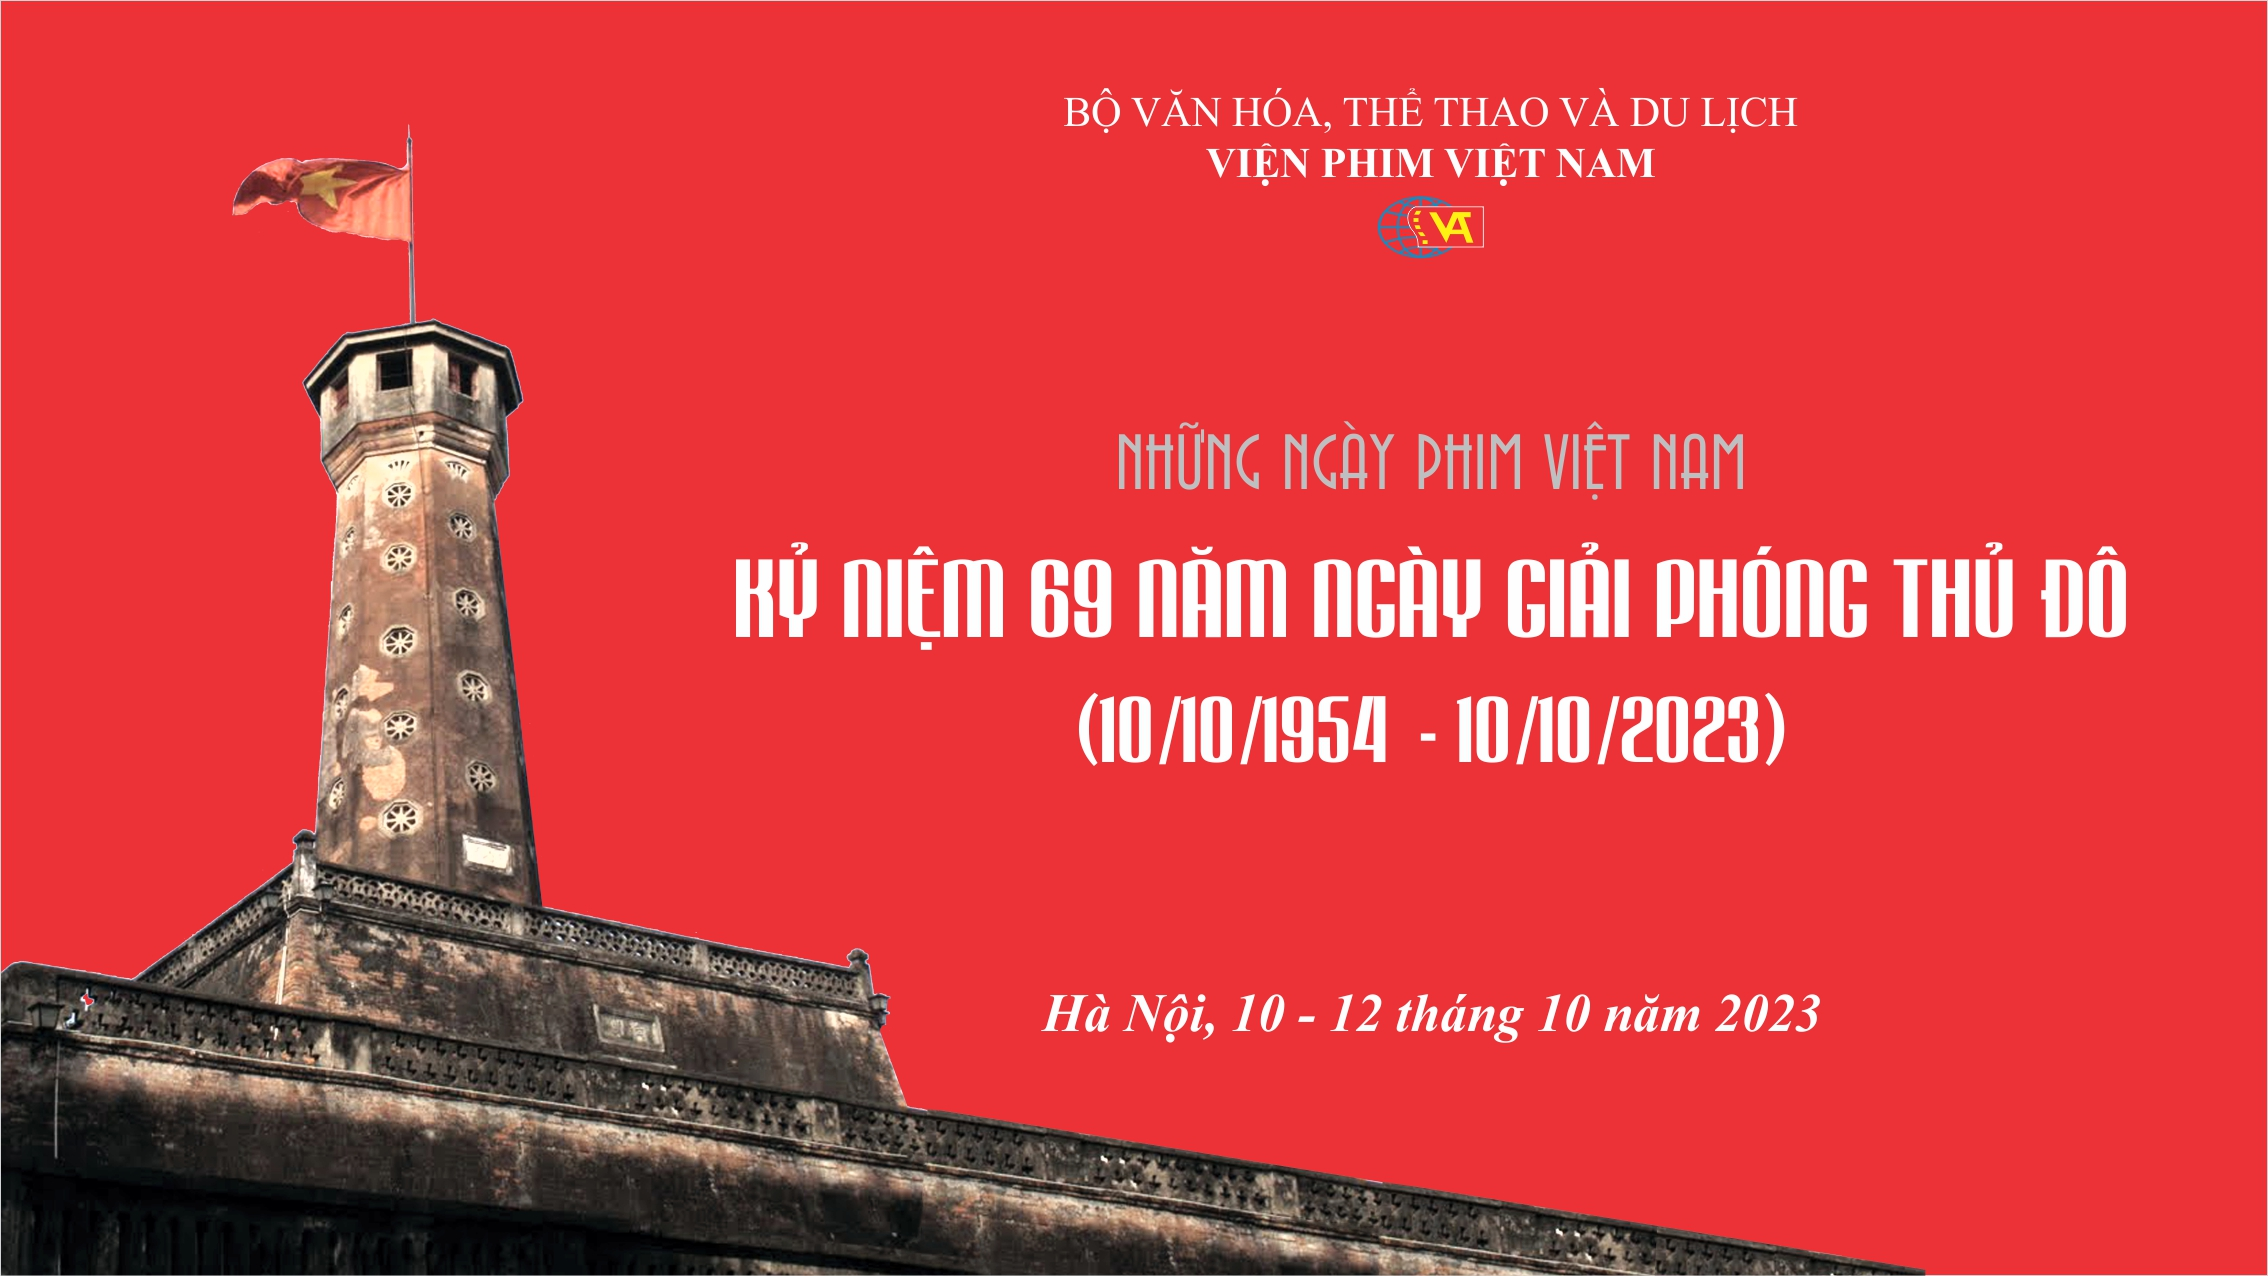 Công chiếu phim tài liệu "CÁT BỤI & KIM LOẠI" (DUST & METAL) dự án phim hợp tác Quốc tế sử dụng tư liệu lưu trữ của Viện Phim Việt Nam